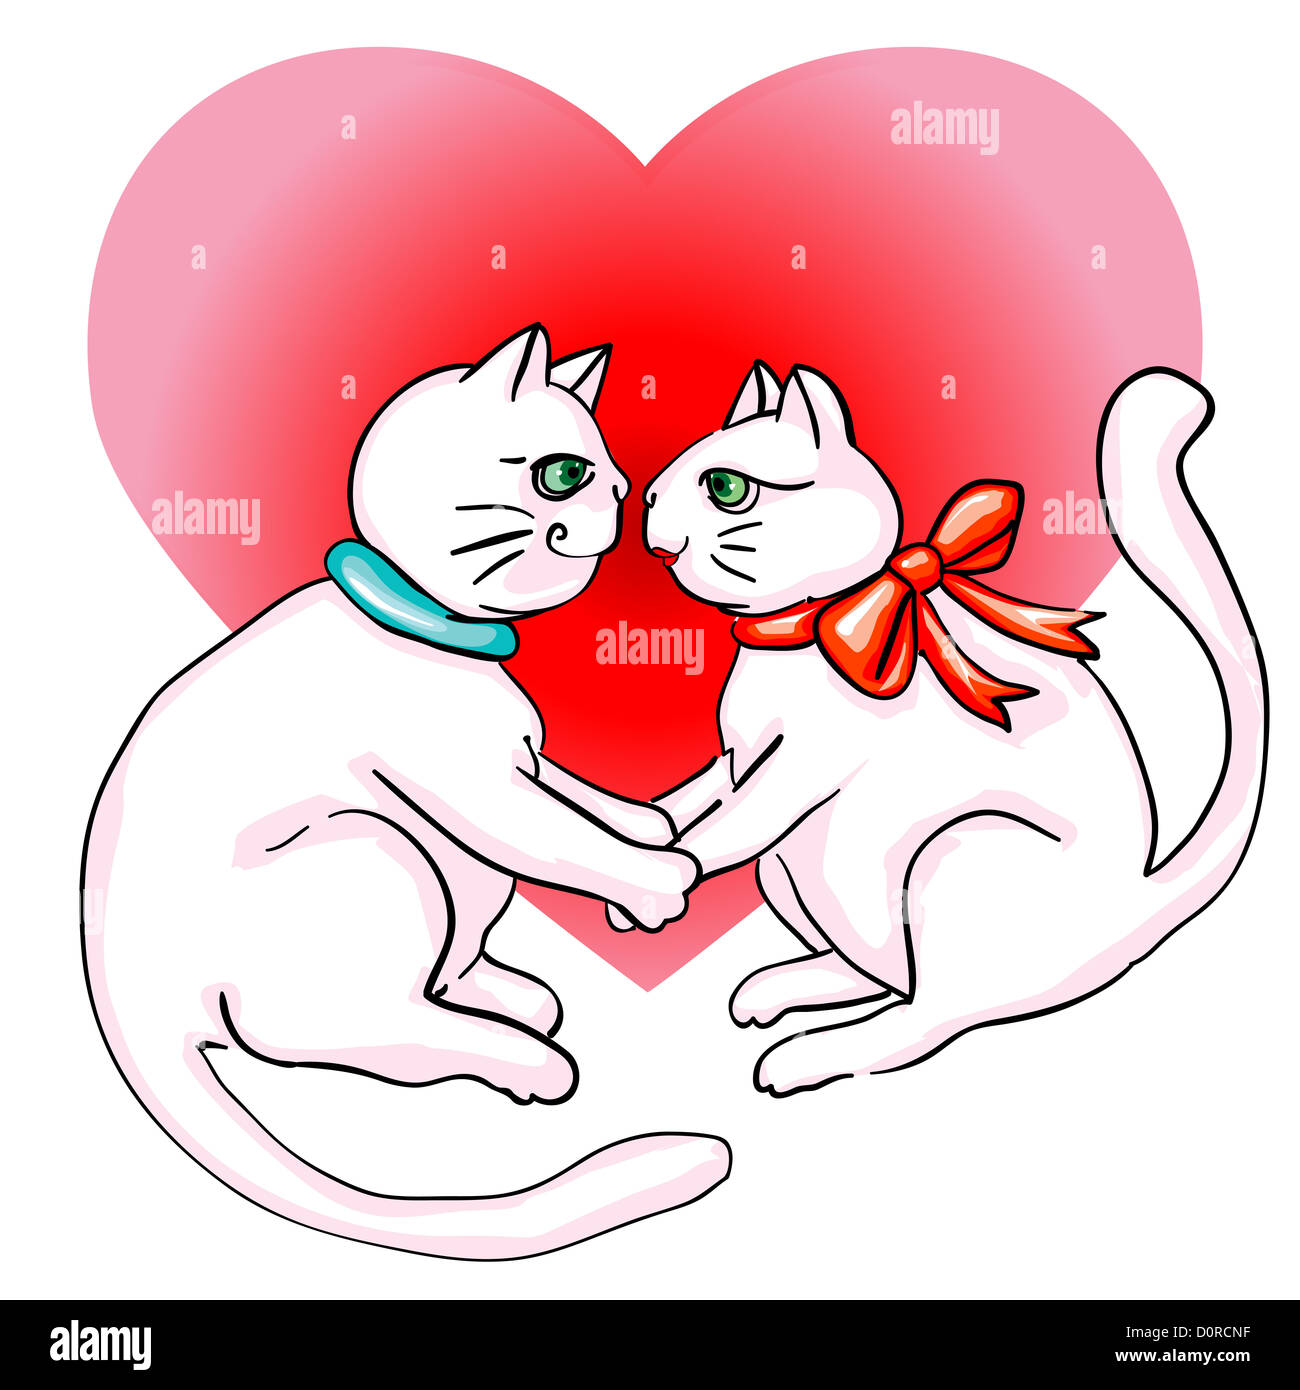 Кошка муж кошка жена. Влюбленные котики. Валентинка коты. Рисунок на день влюбленных.